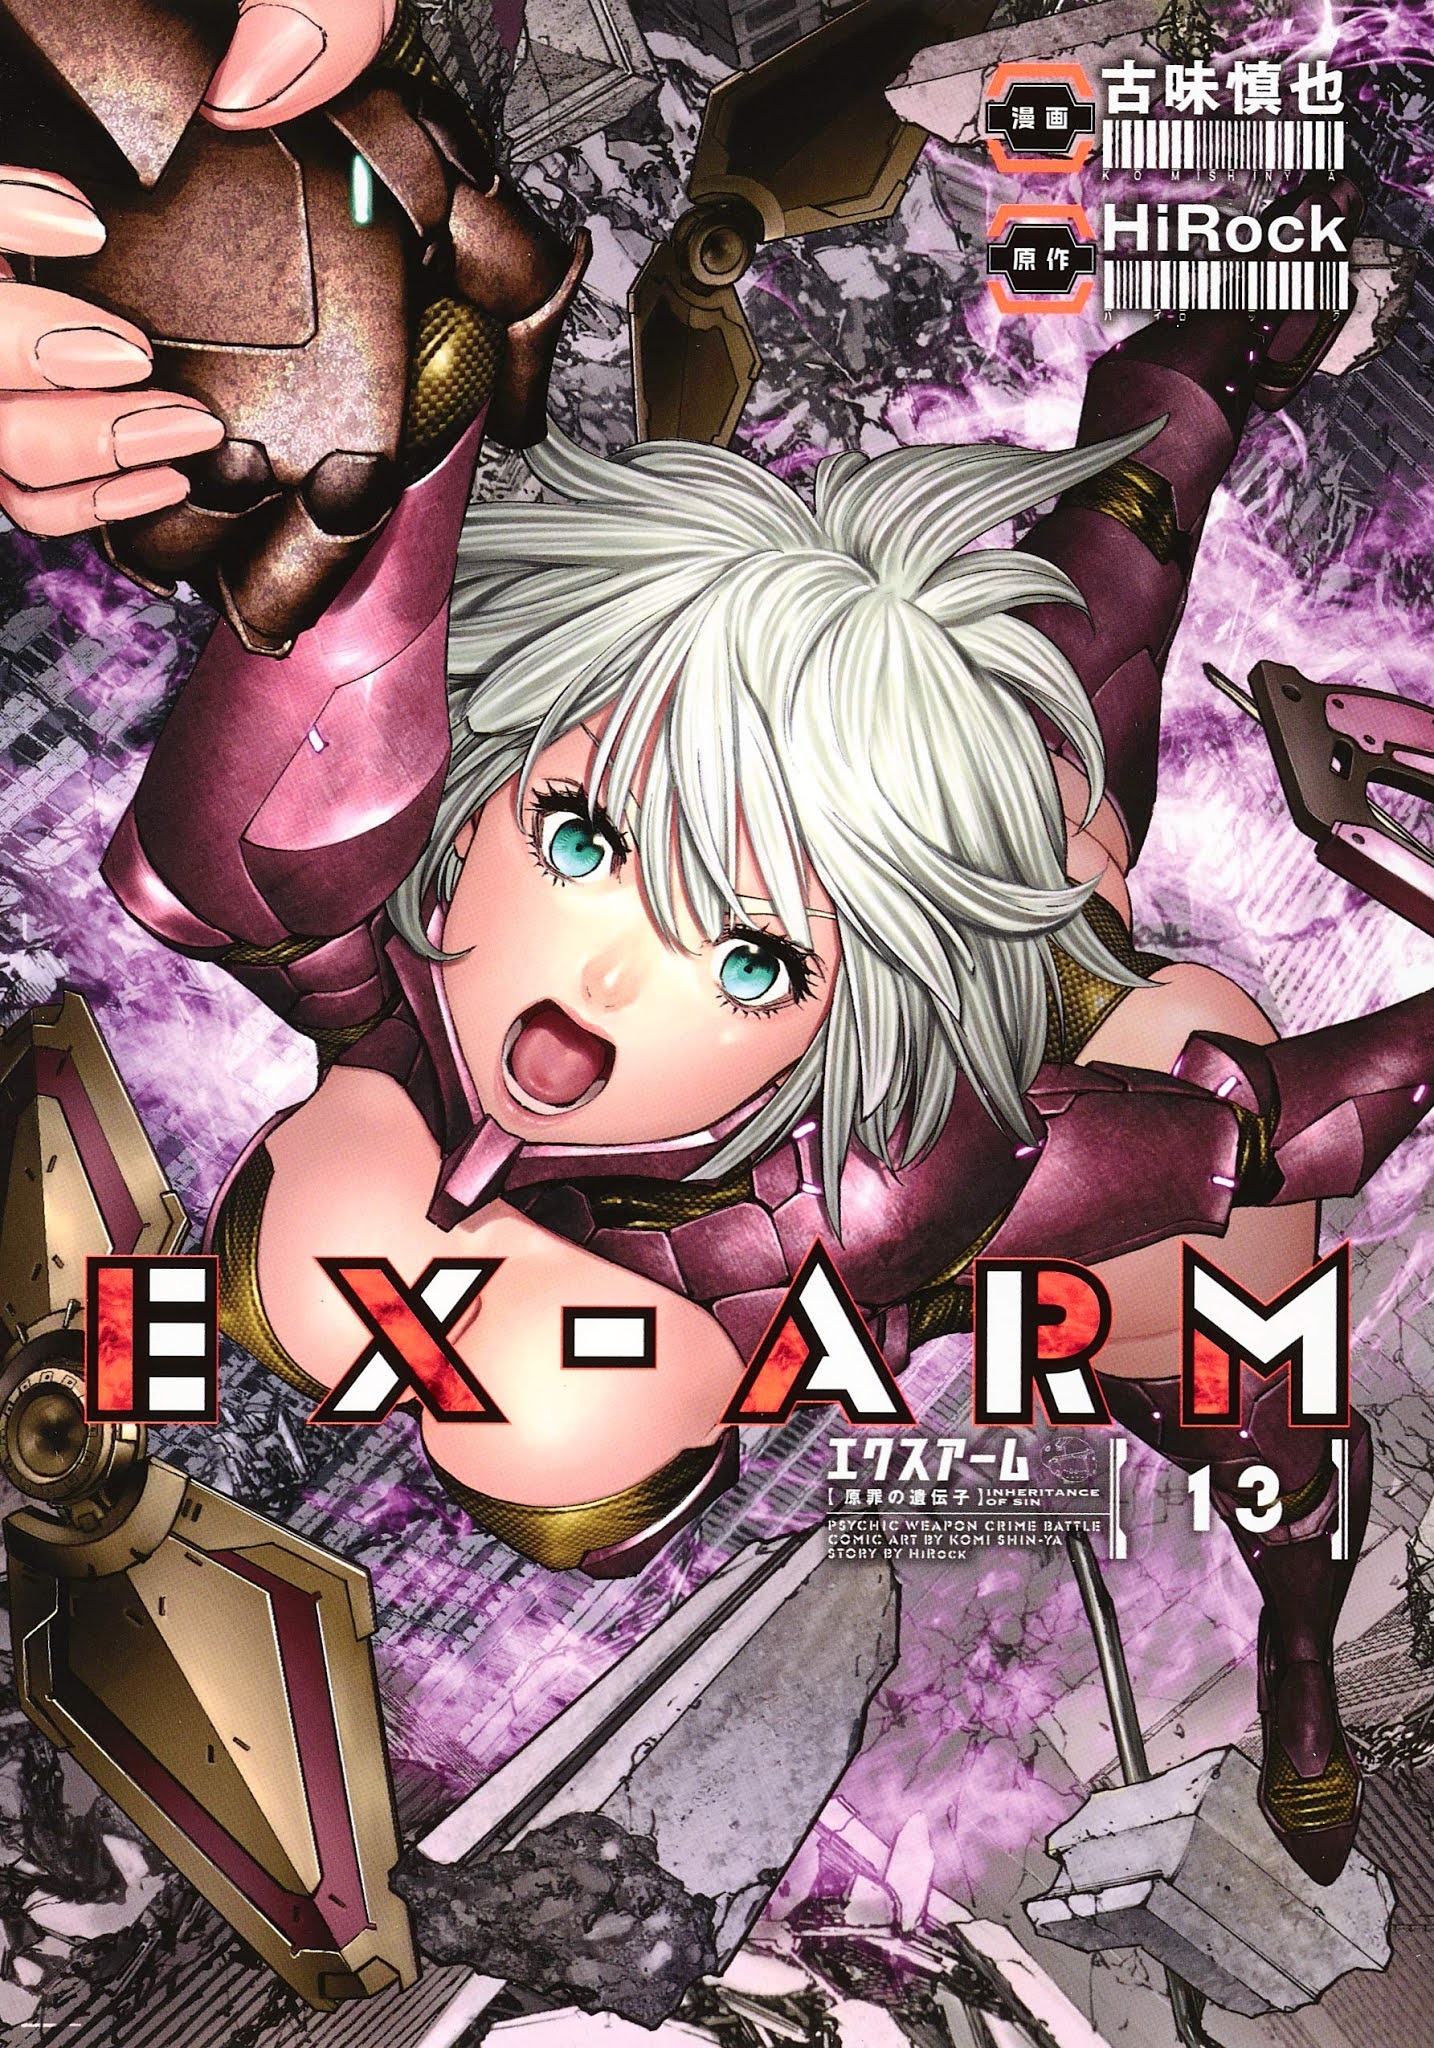 EX-ARM, A Crunchyroll Original